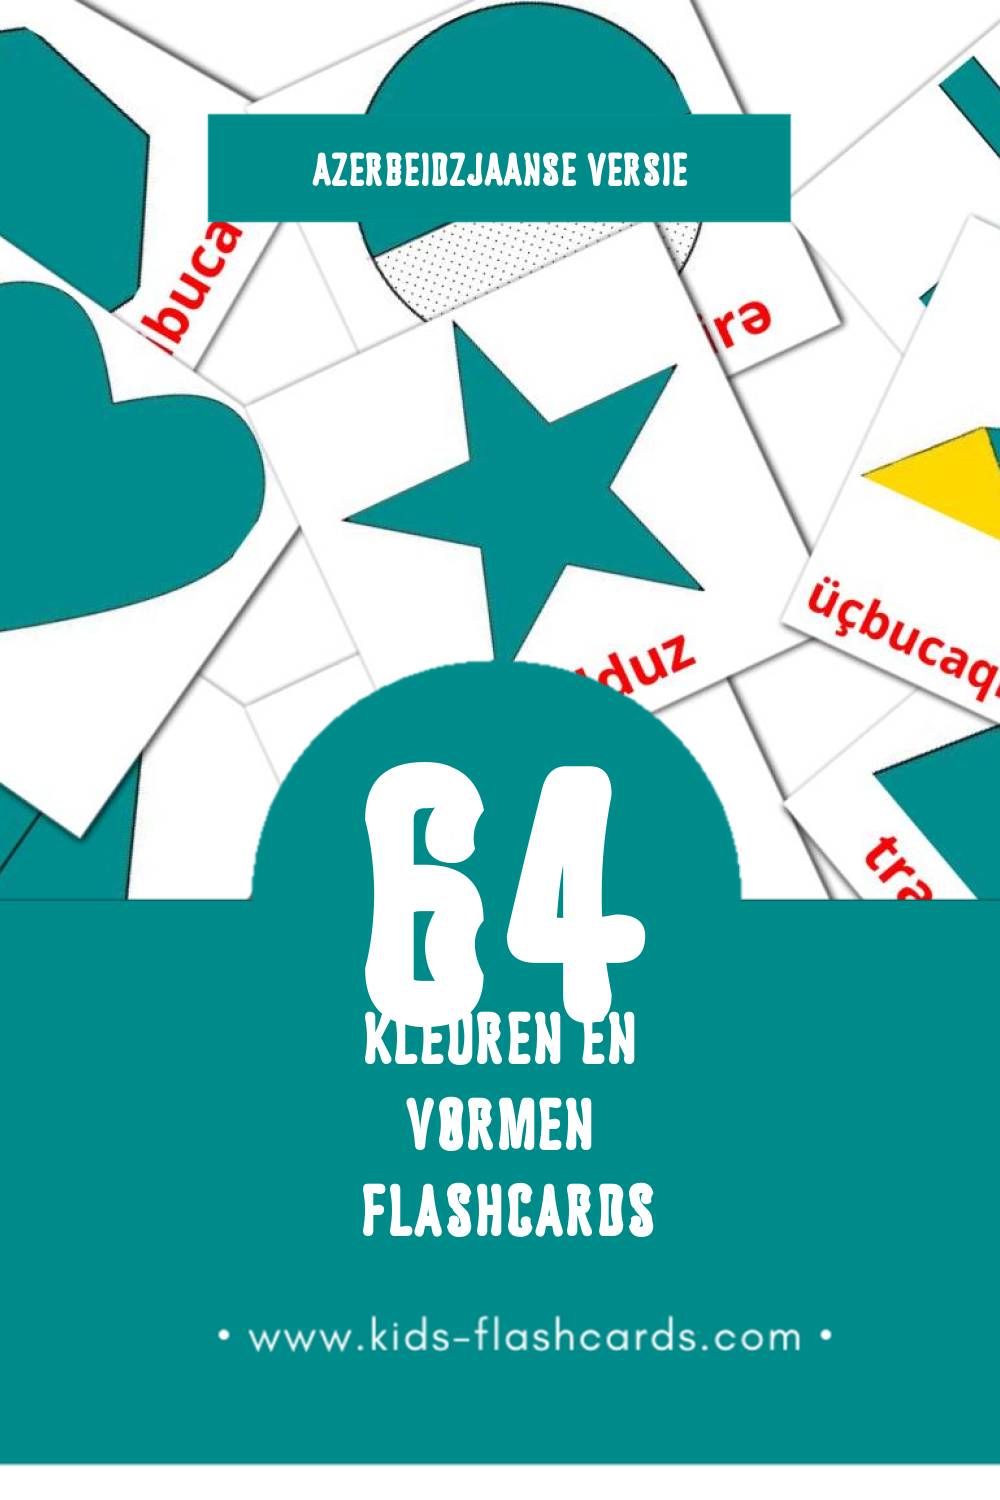 Visuele Rənglər və formalar Flashcards voor Kleuters (64 kaarten in het Azerbeidzjaans)